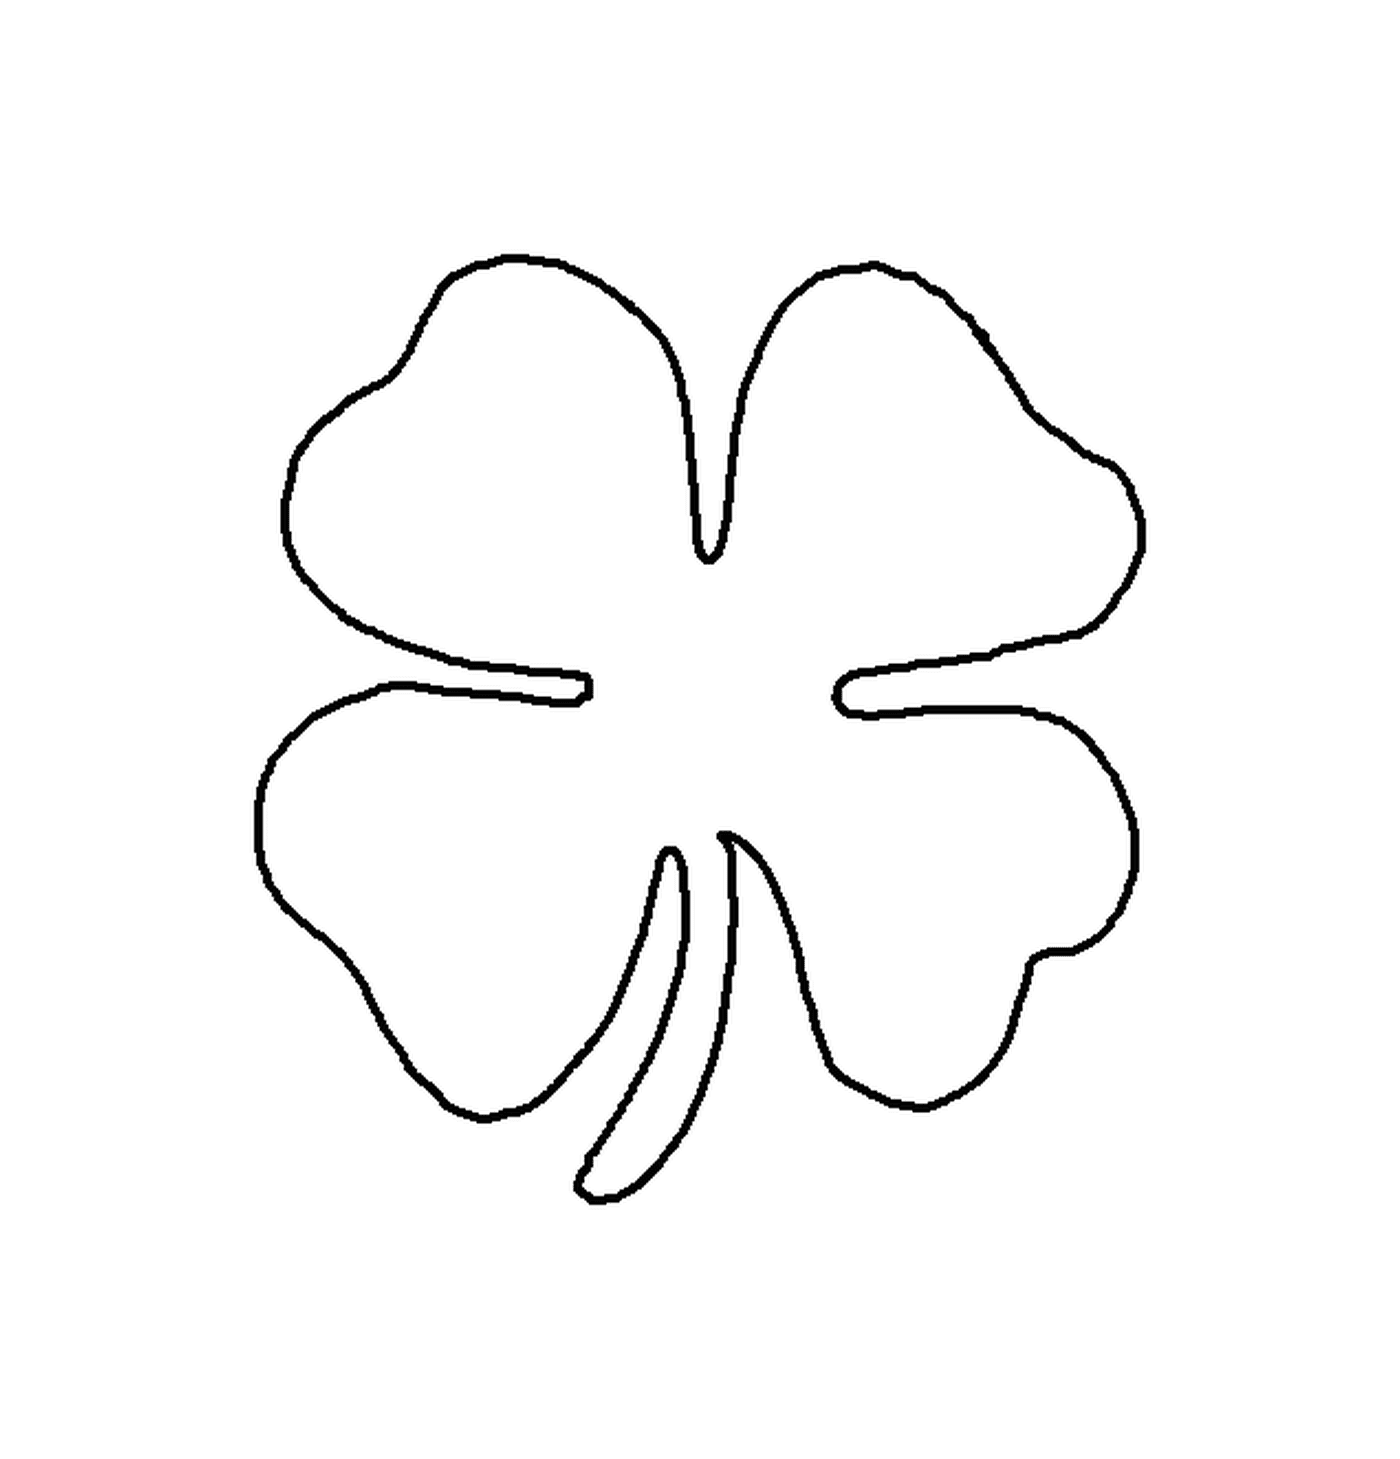  Shamrock, symbol of Ireland for Saint Patrick 